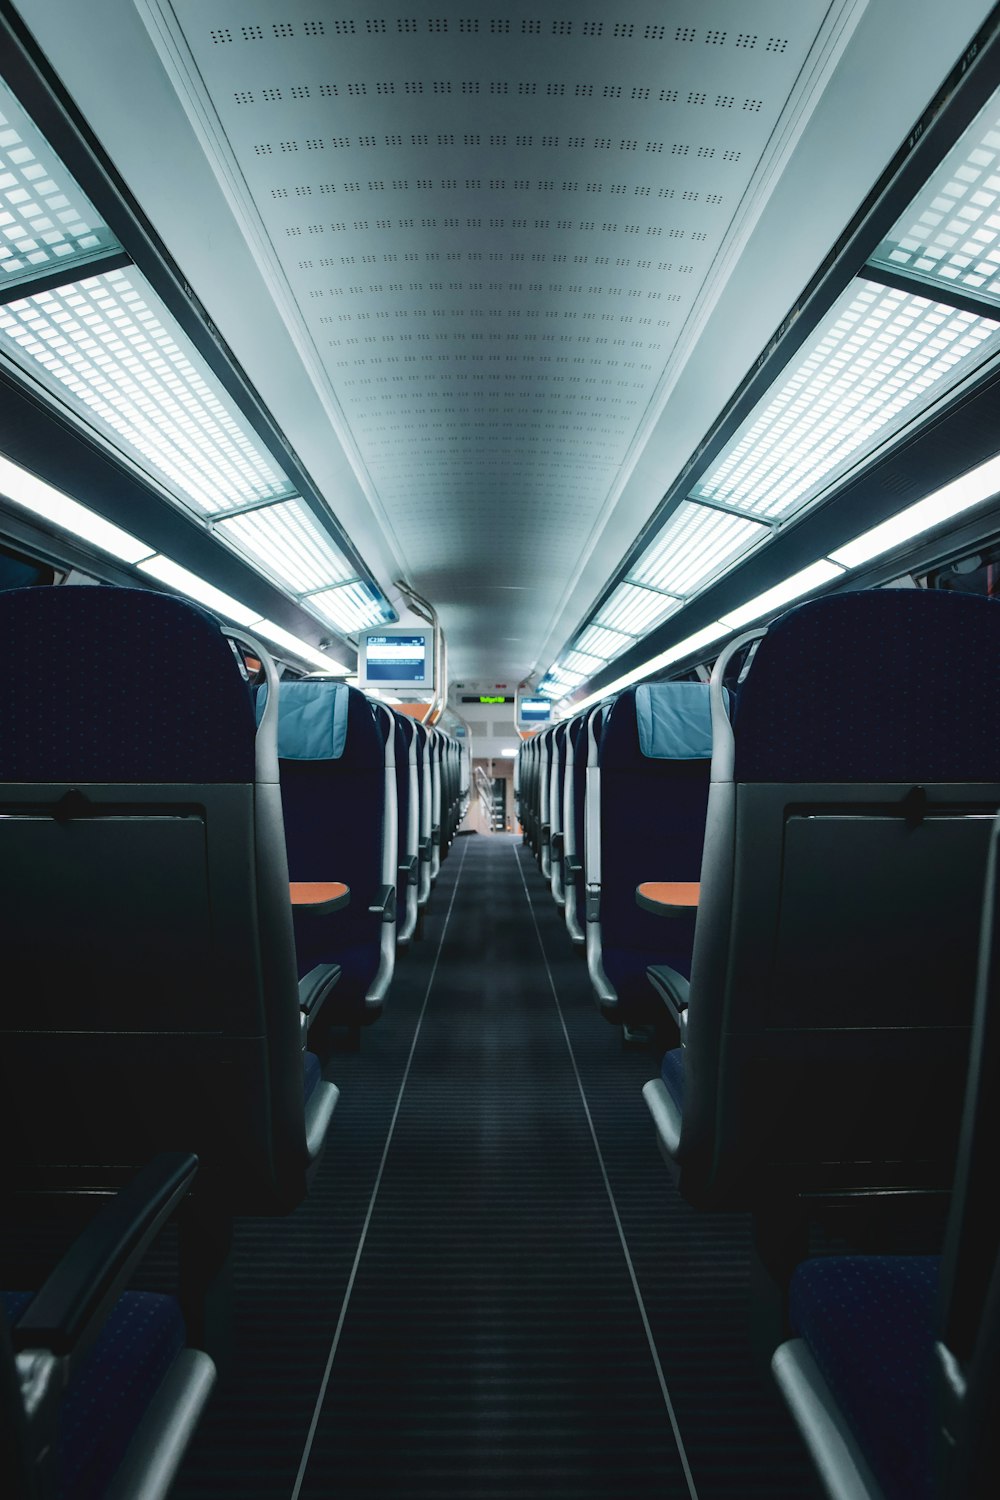 black and white train interior